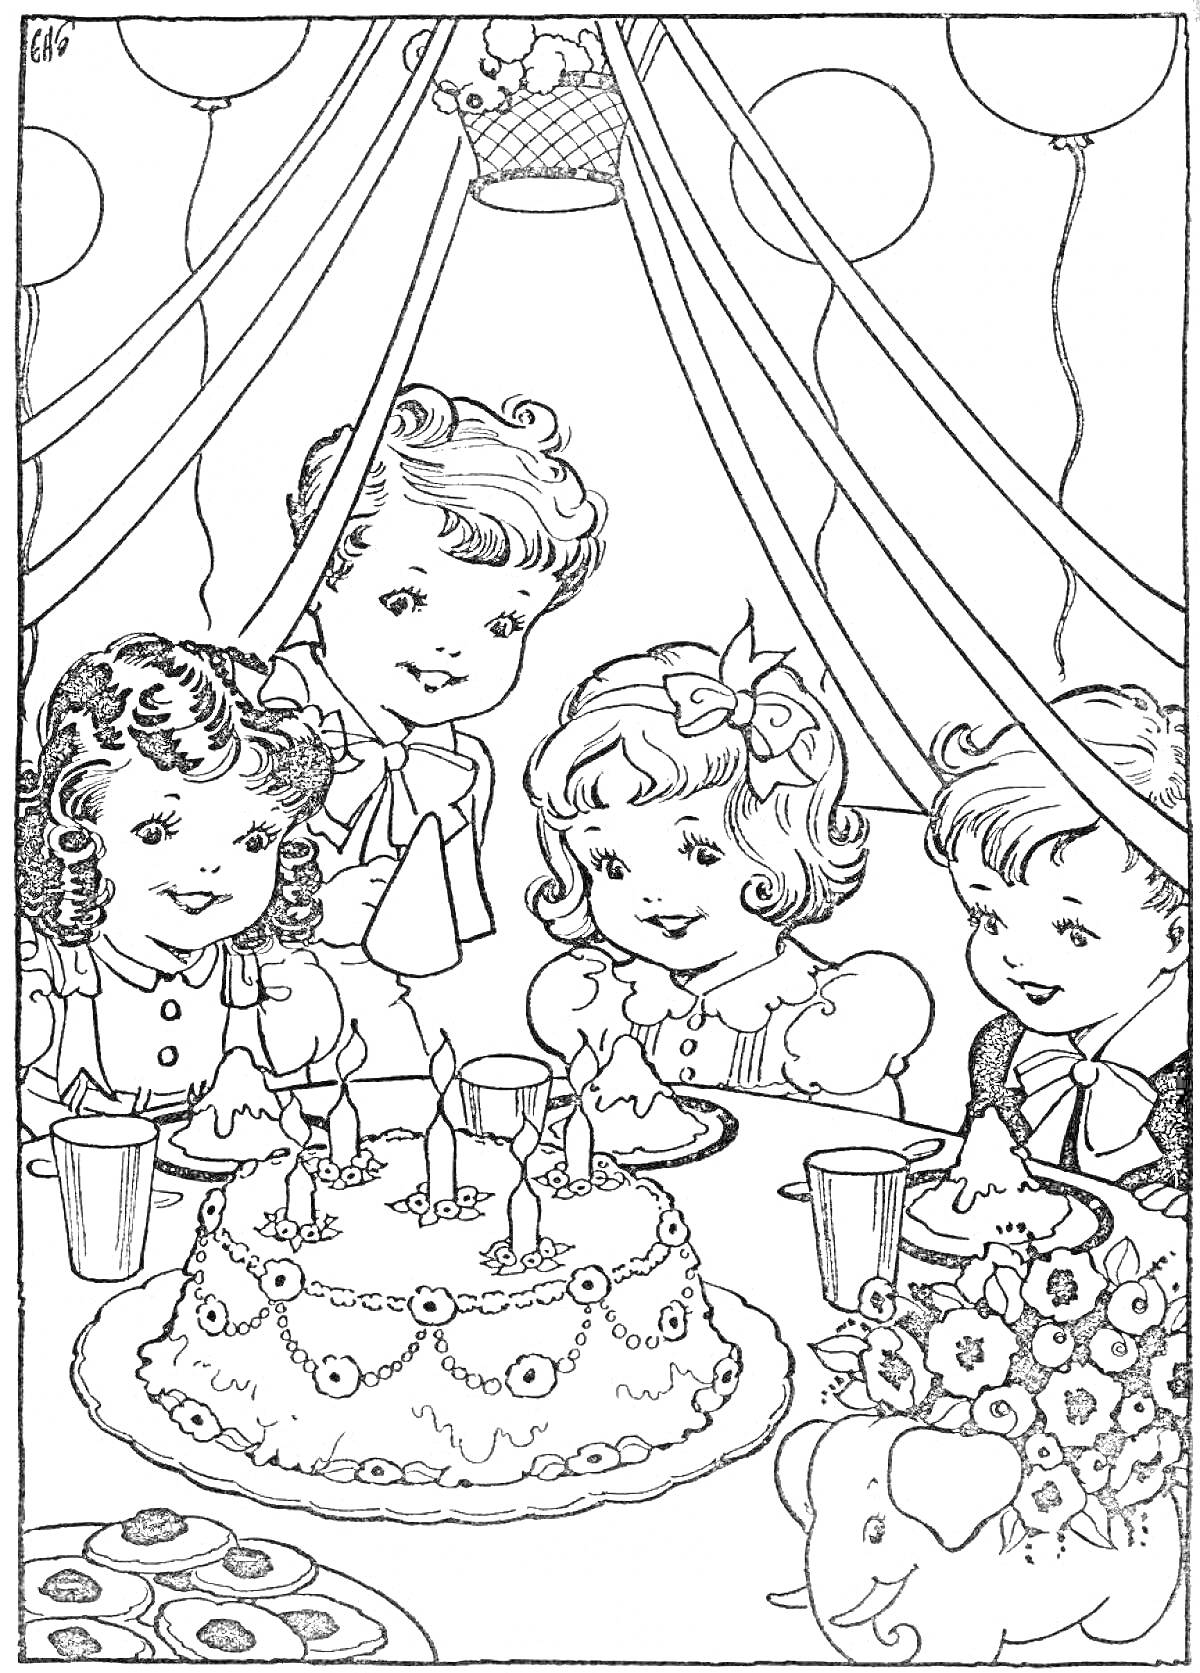 Раскраска Вечеринка с детьми вокруг праздничного стола, украшенная комната, праздничный торт, напитки, цветы, игрушечный слон и воздушные шары